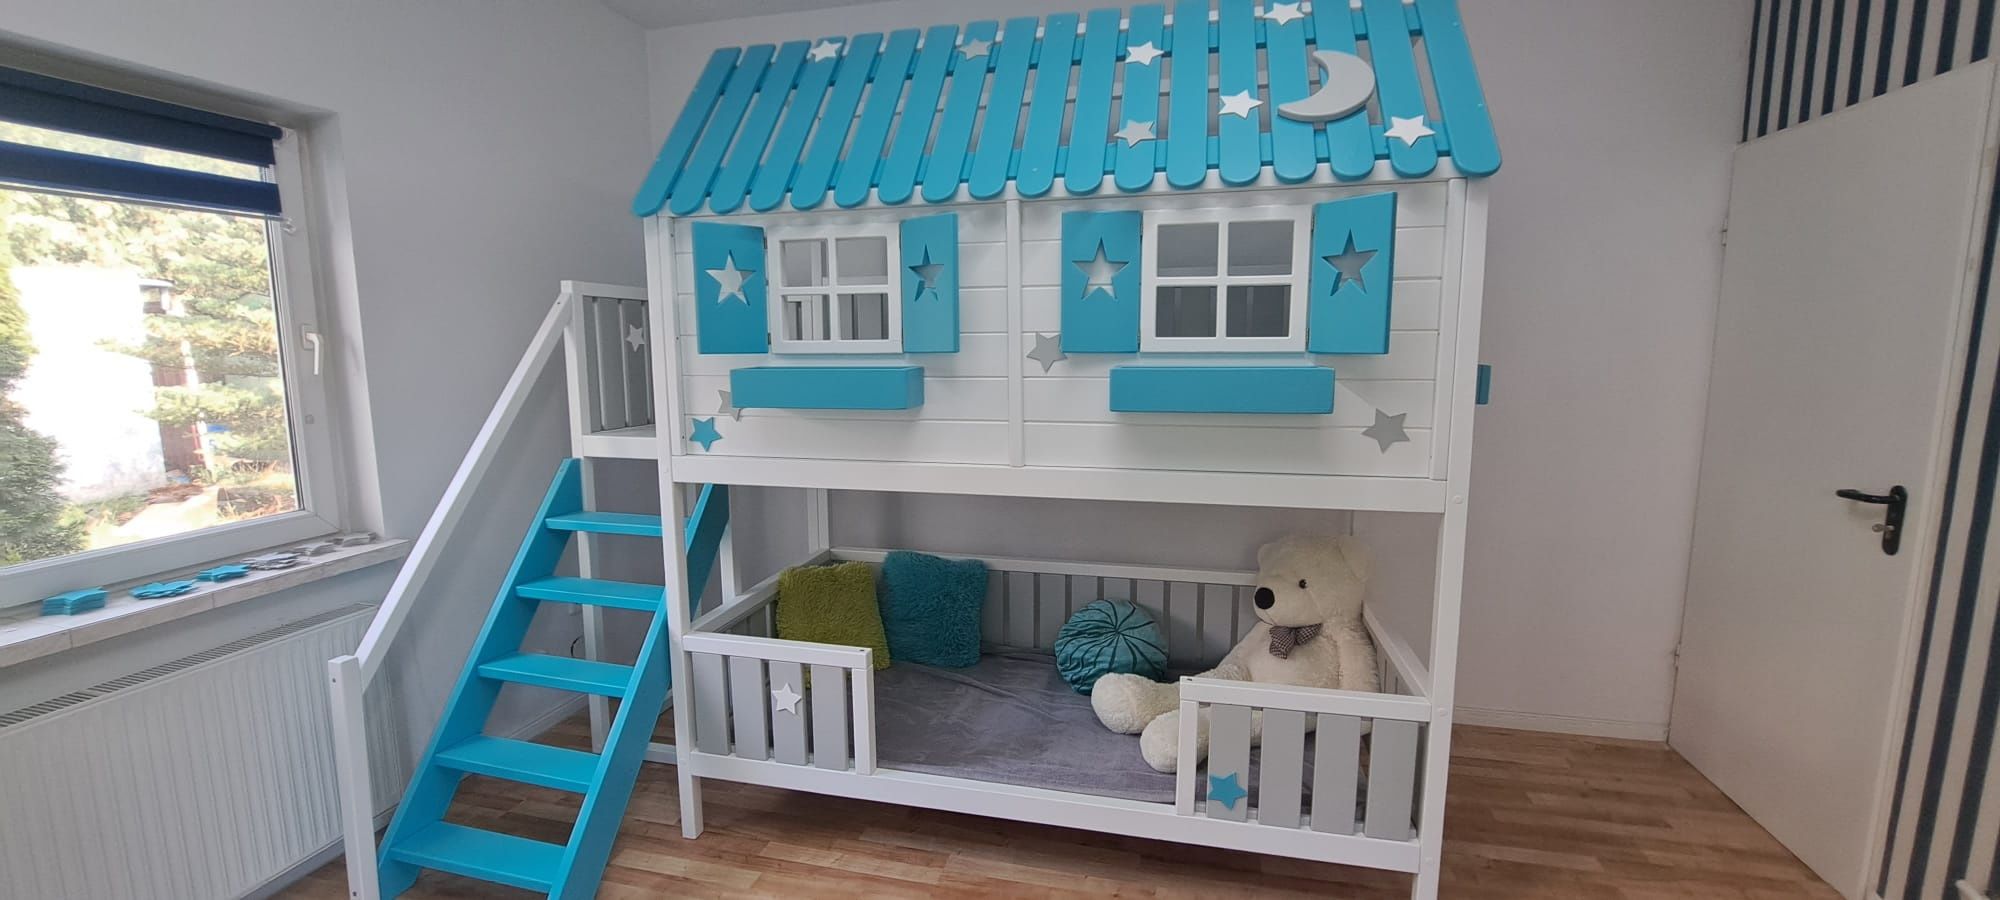 Łóżeczko łóżko dzieciece drewniane piętrowe domek dla dzieci r RATY